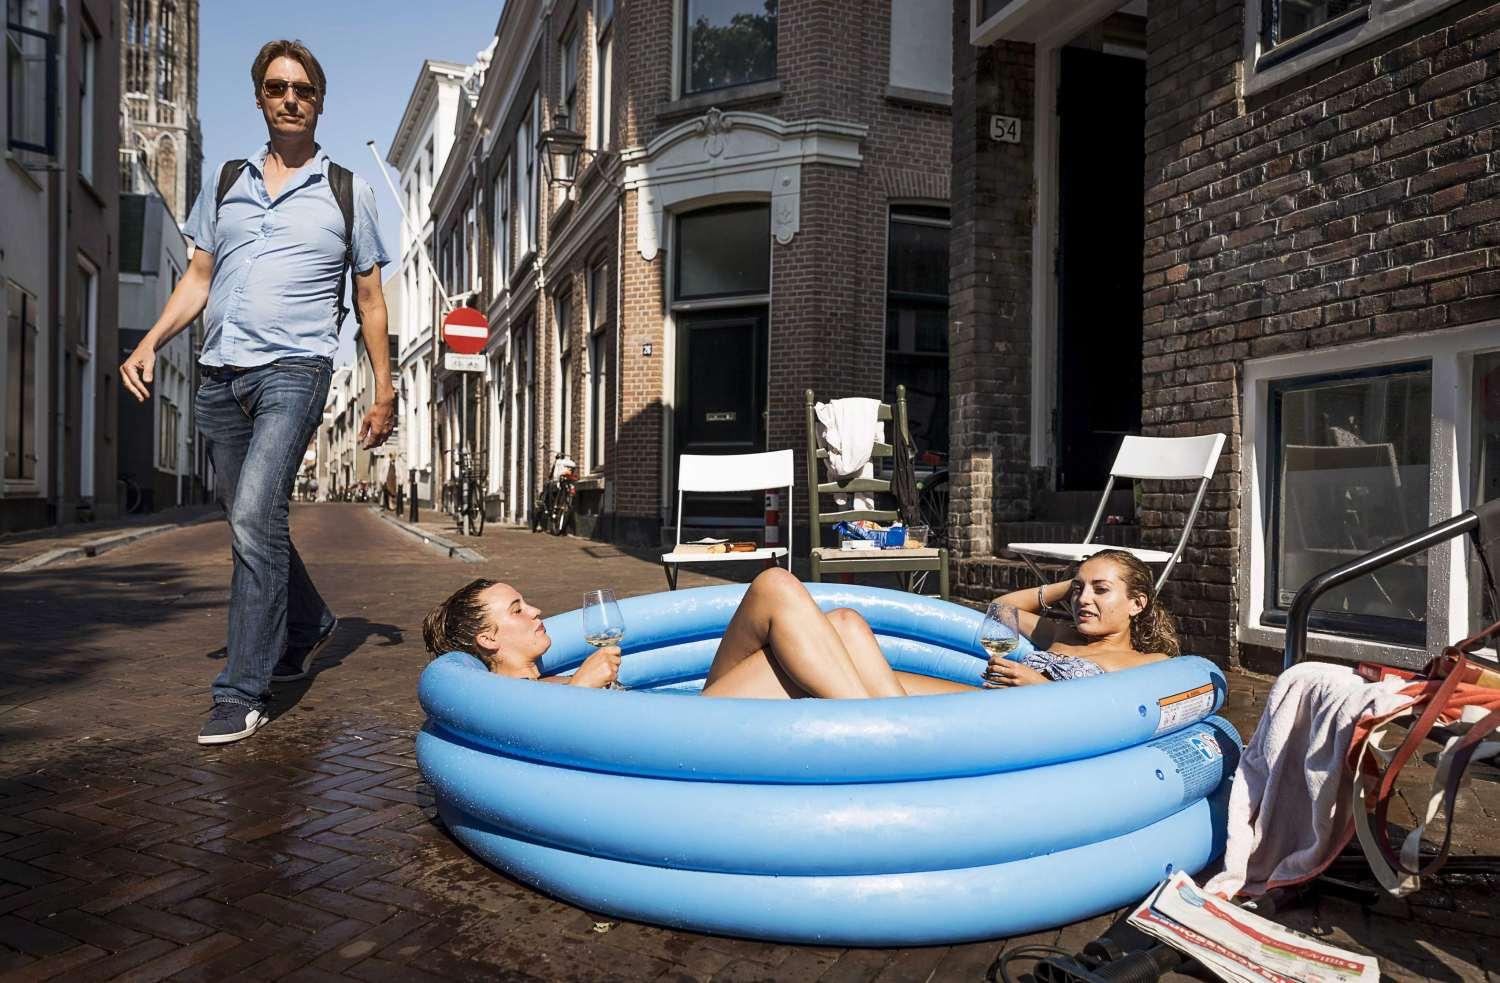  A hollandiai Utrecht nem tartozik a világ legforróbb helyei közé, mégis 31 fokot mértek a napokban